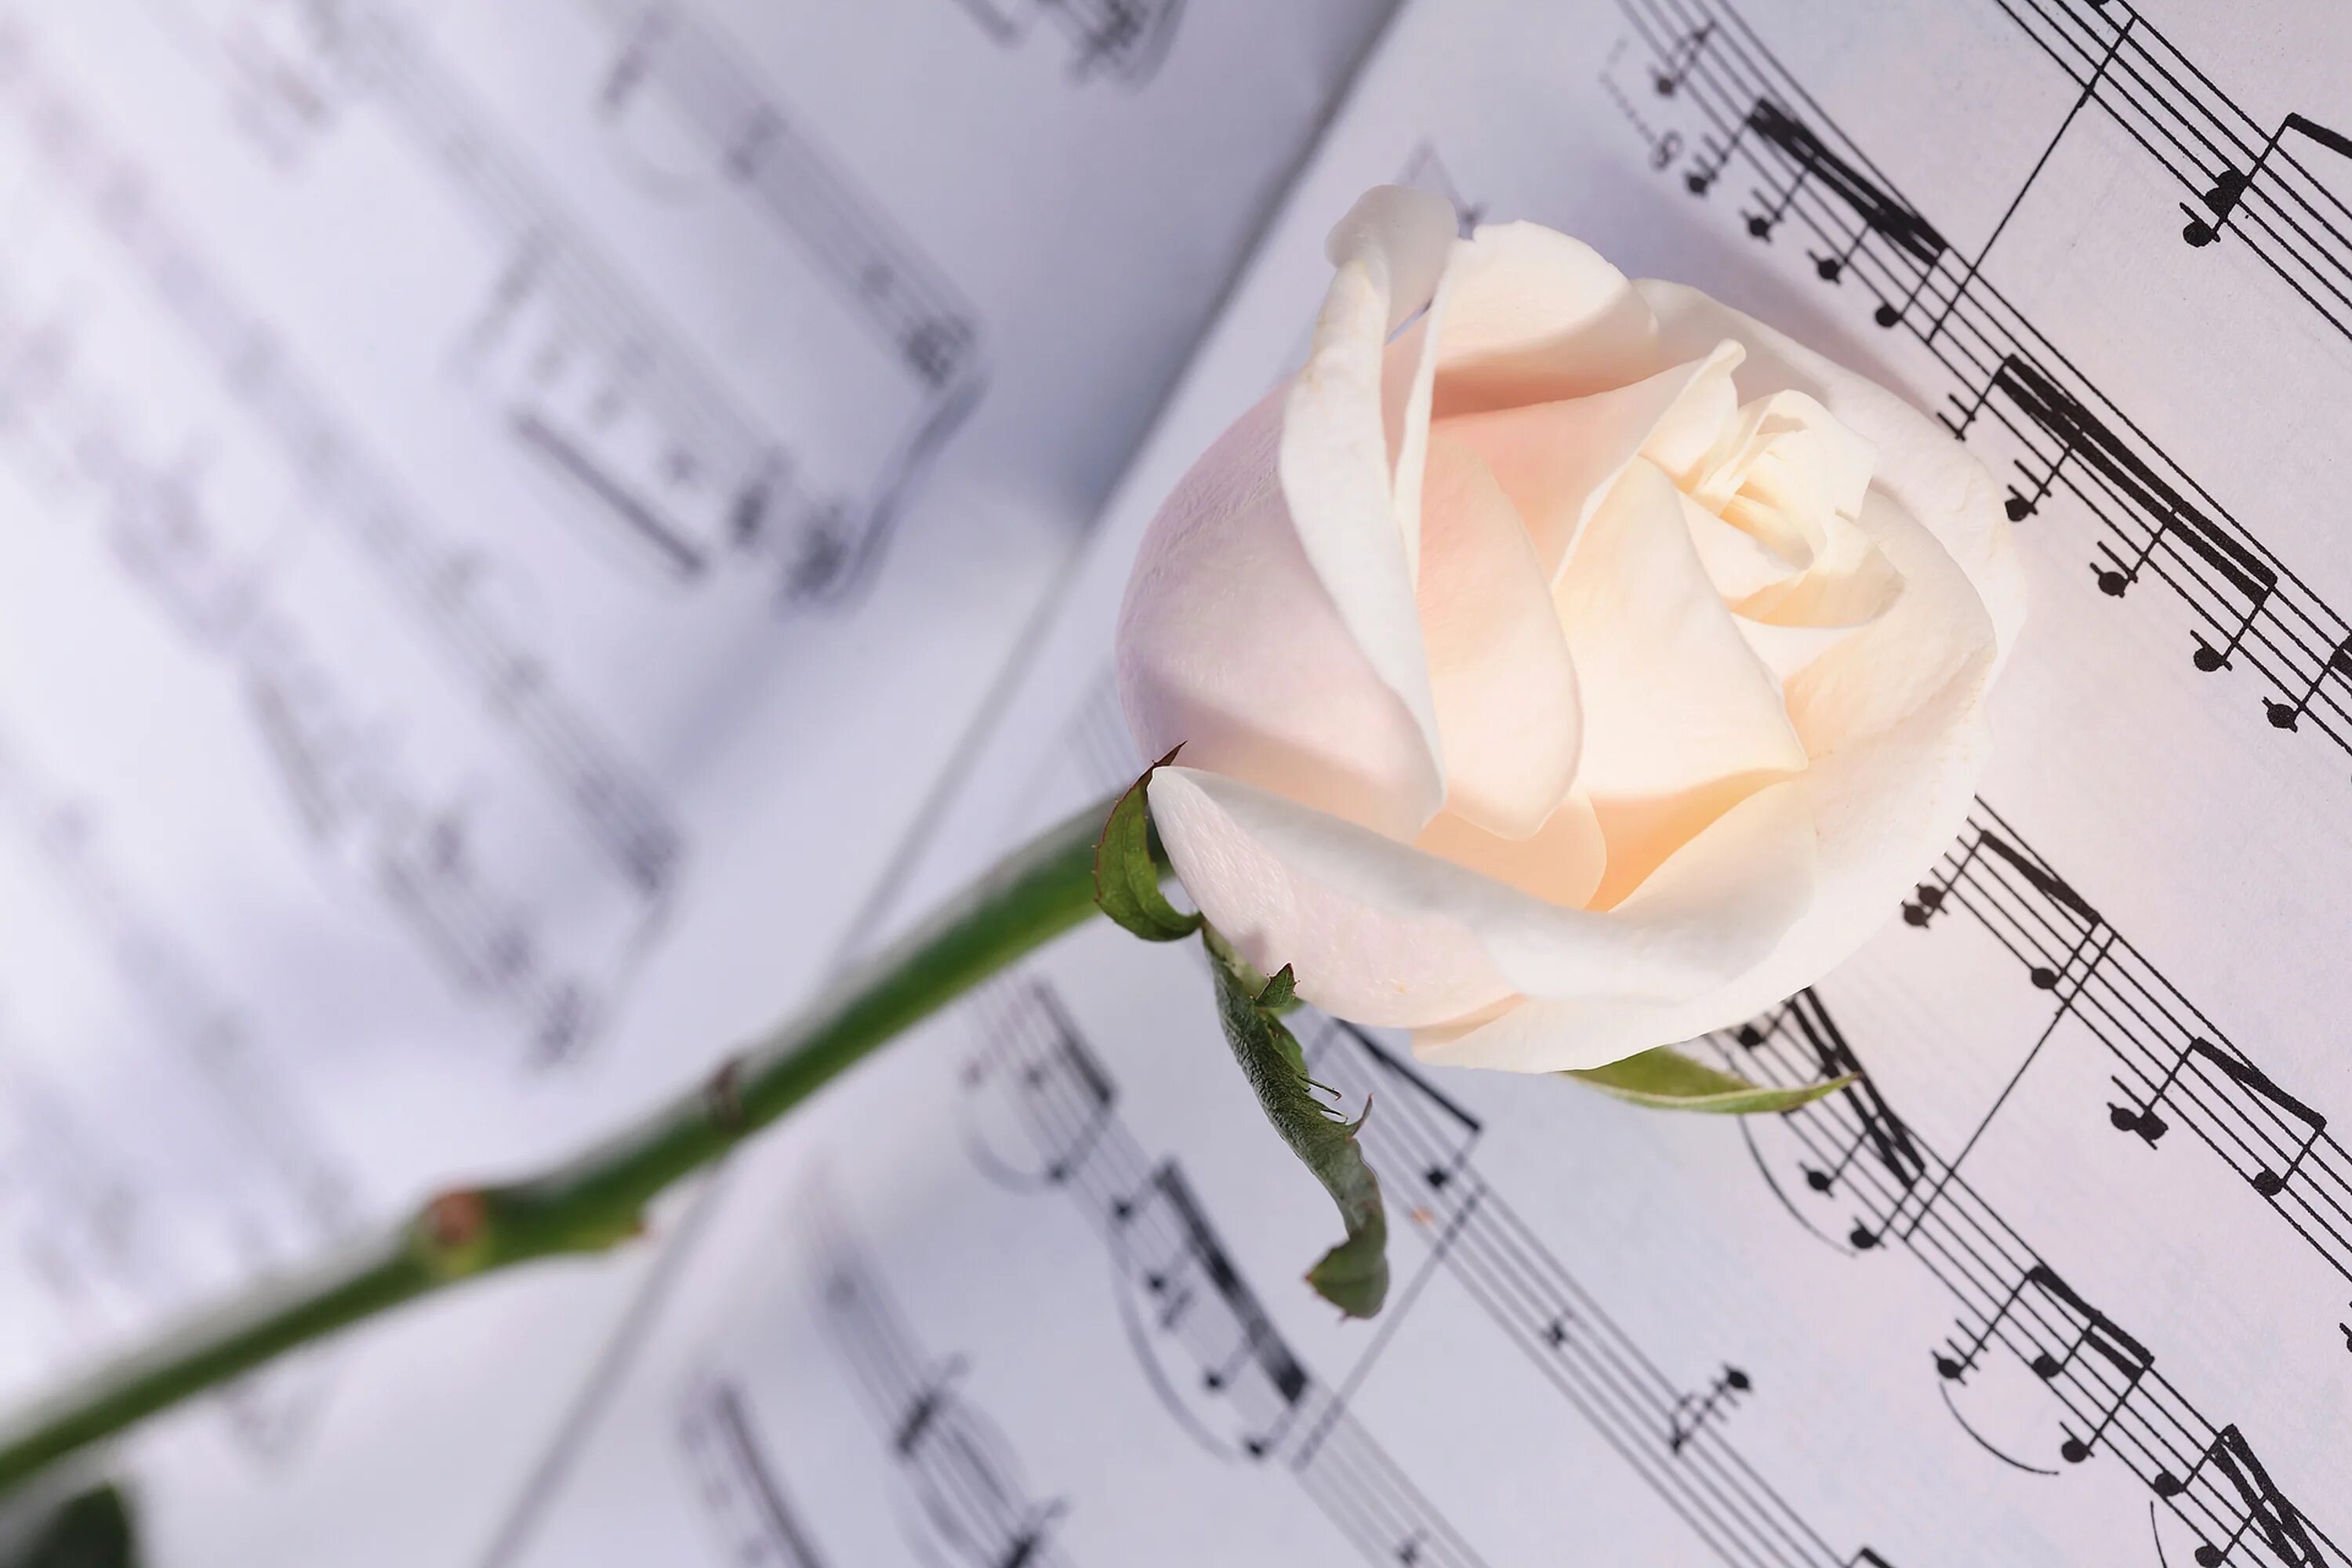 Музыка шопена красивая и нежная. Ноты и цветы. Нежный цветок. Красивый фон с нотами и цветами. Белые розы.